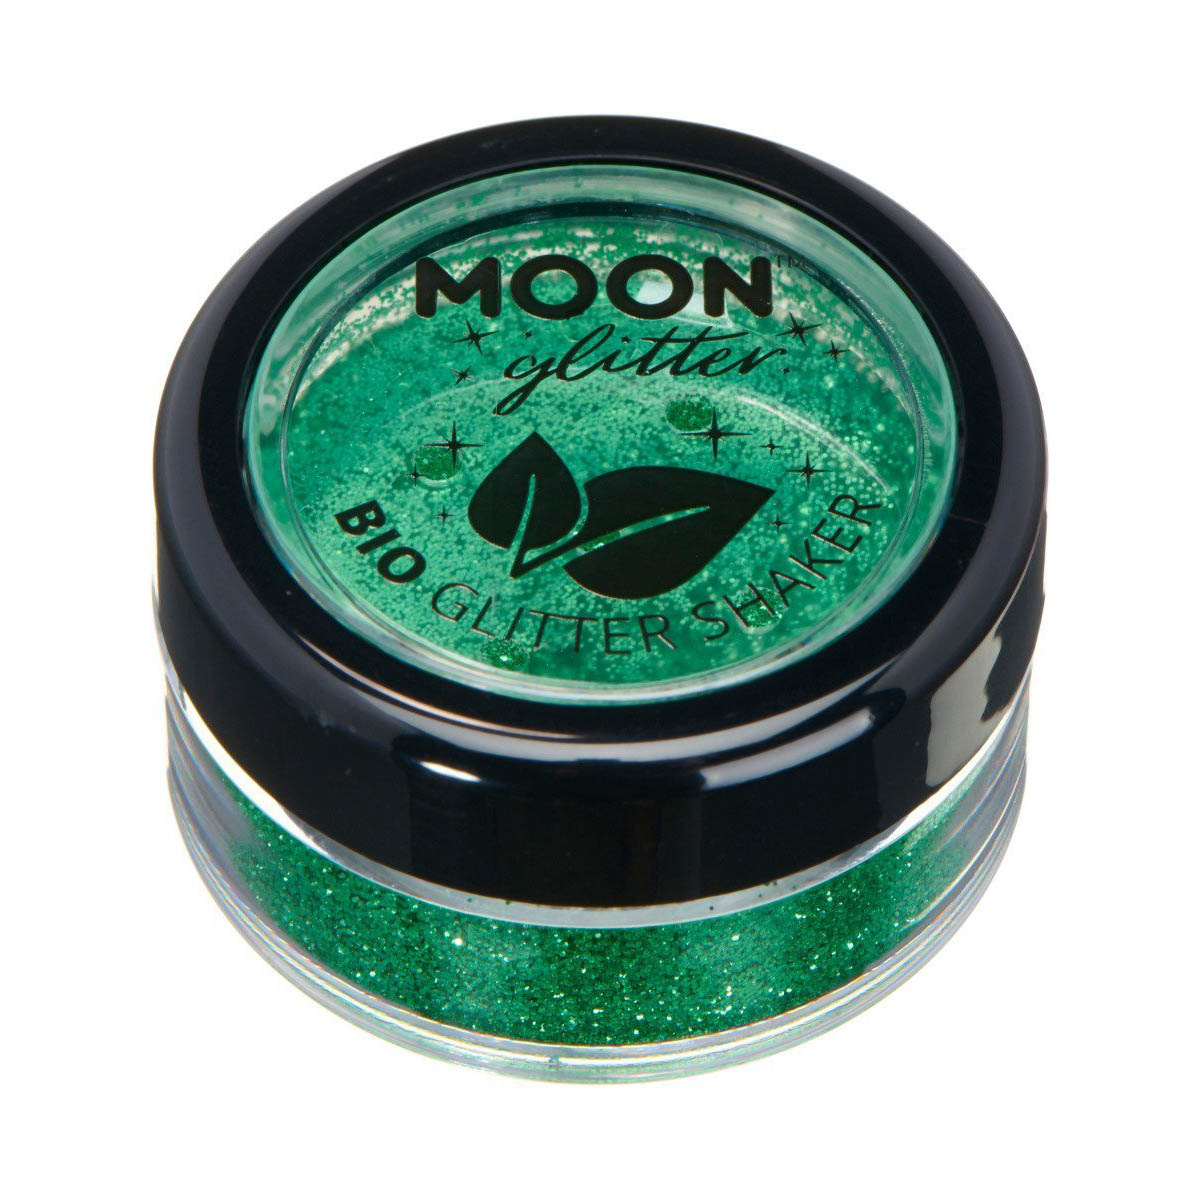 Moon glitter bio finkornigt shakers, 5g Grön